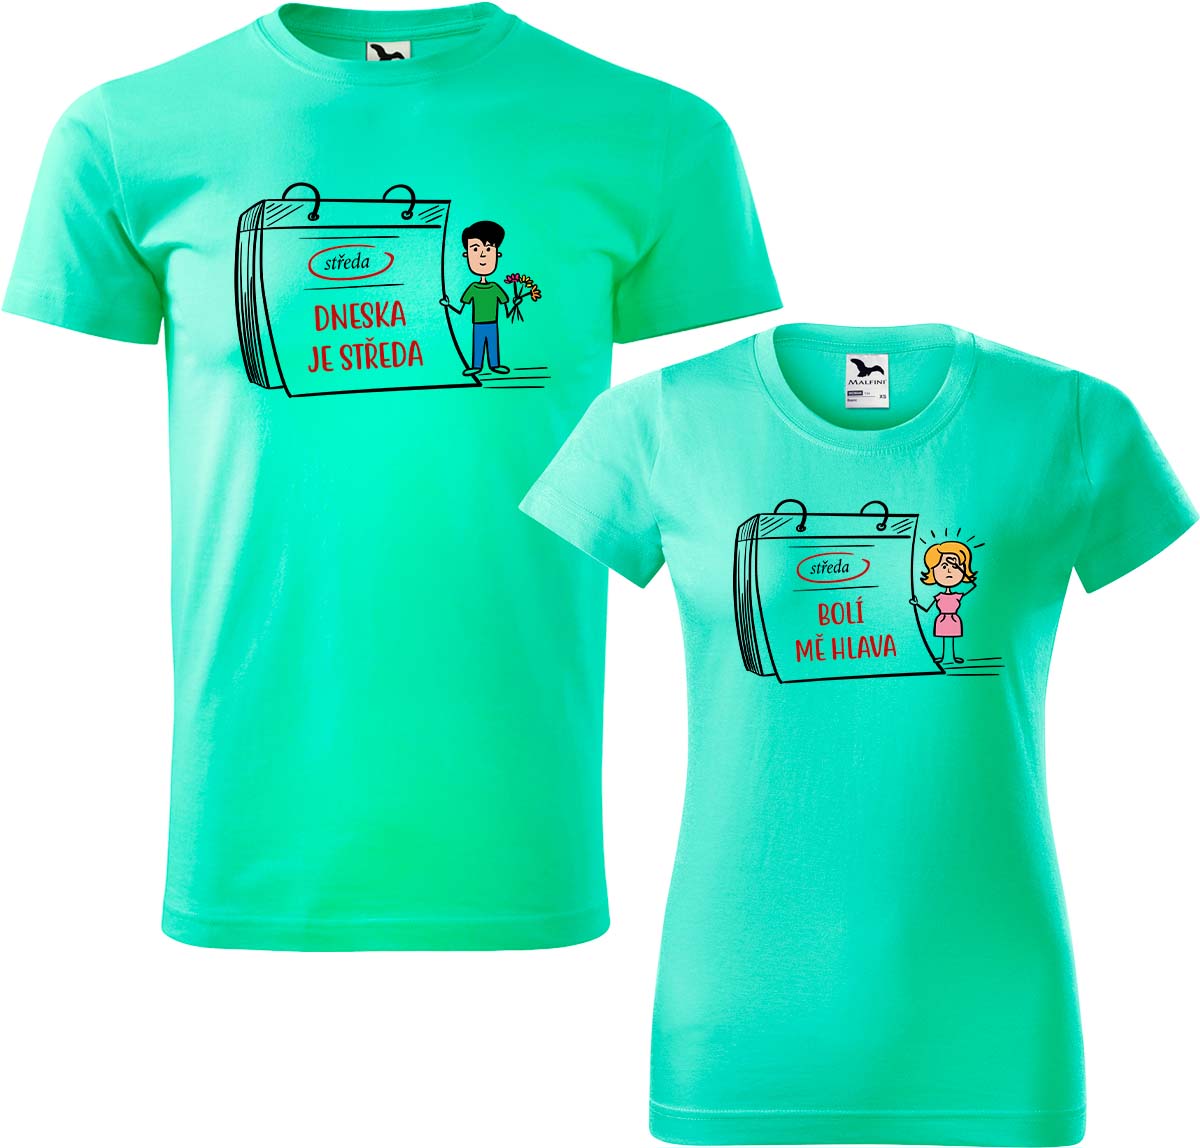 Trička pro páry - Dneska je středa Barva: Mátová (95), Velikost dámské tričko: XL, Velikost pánské tričko: XL